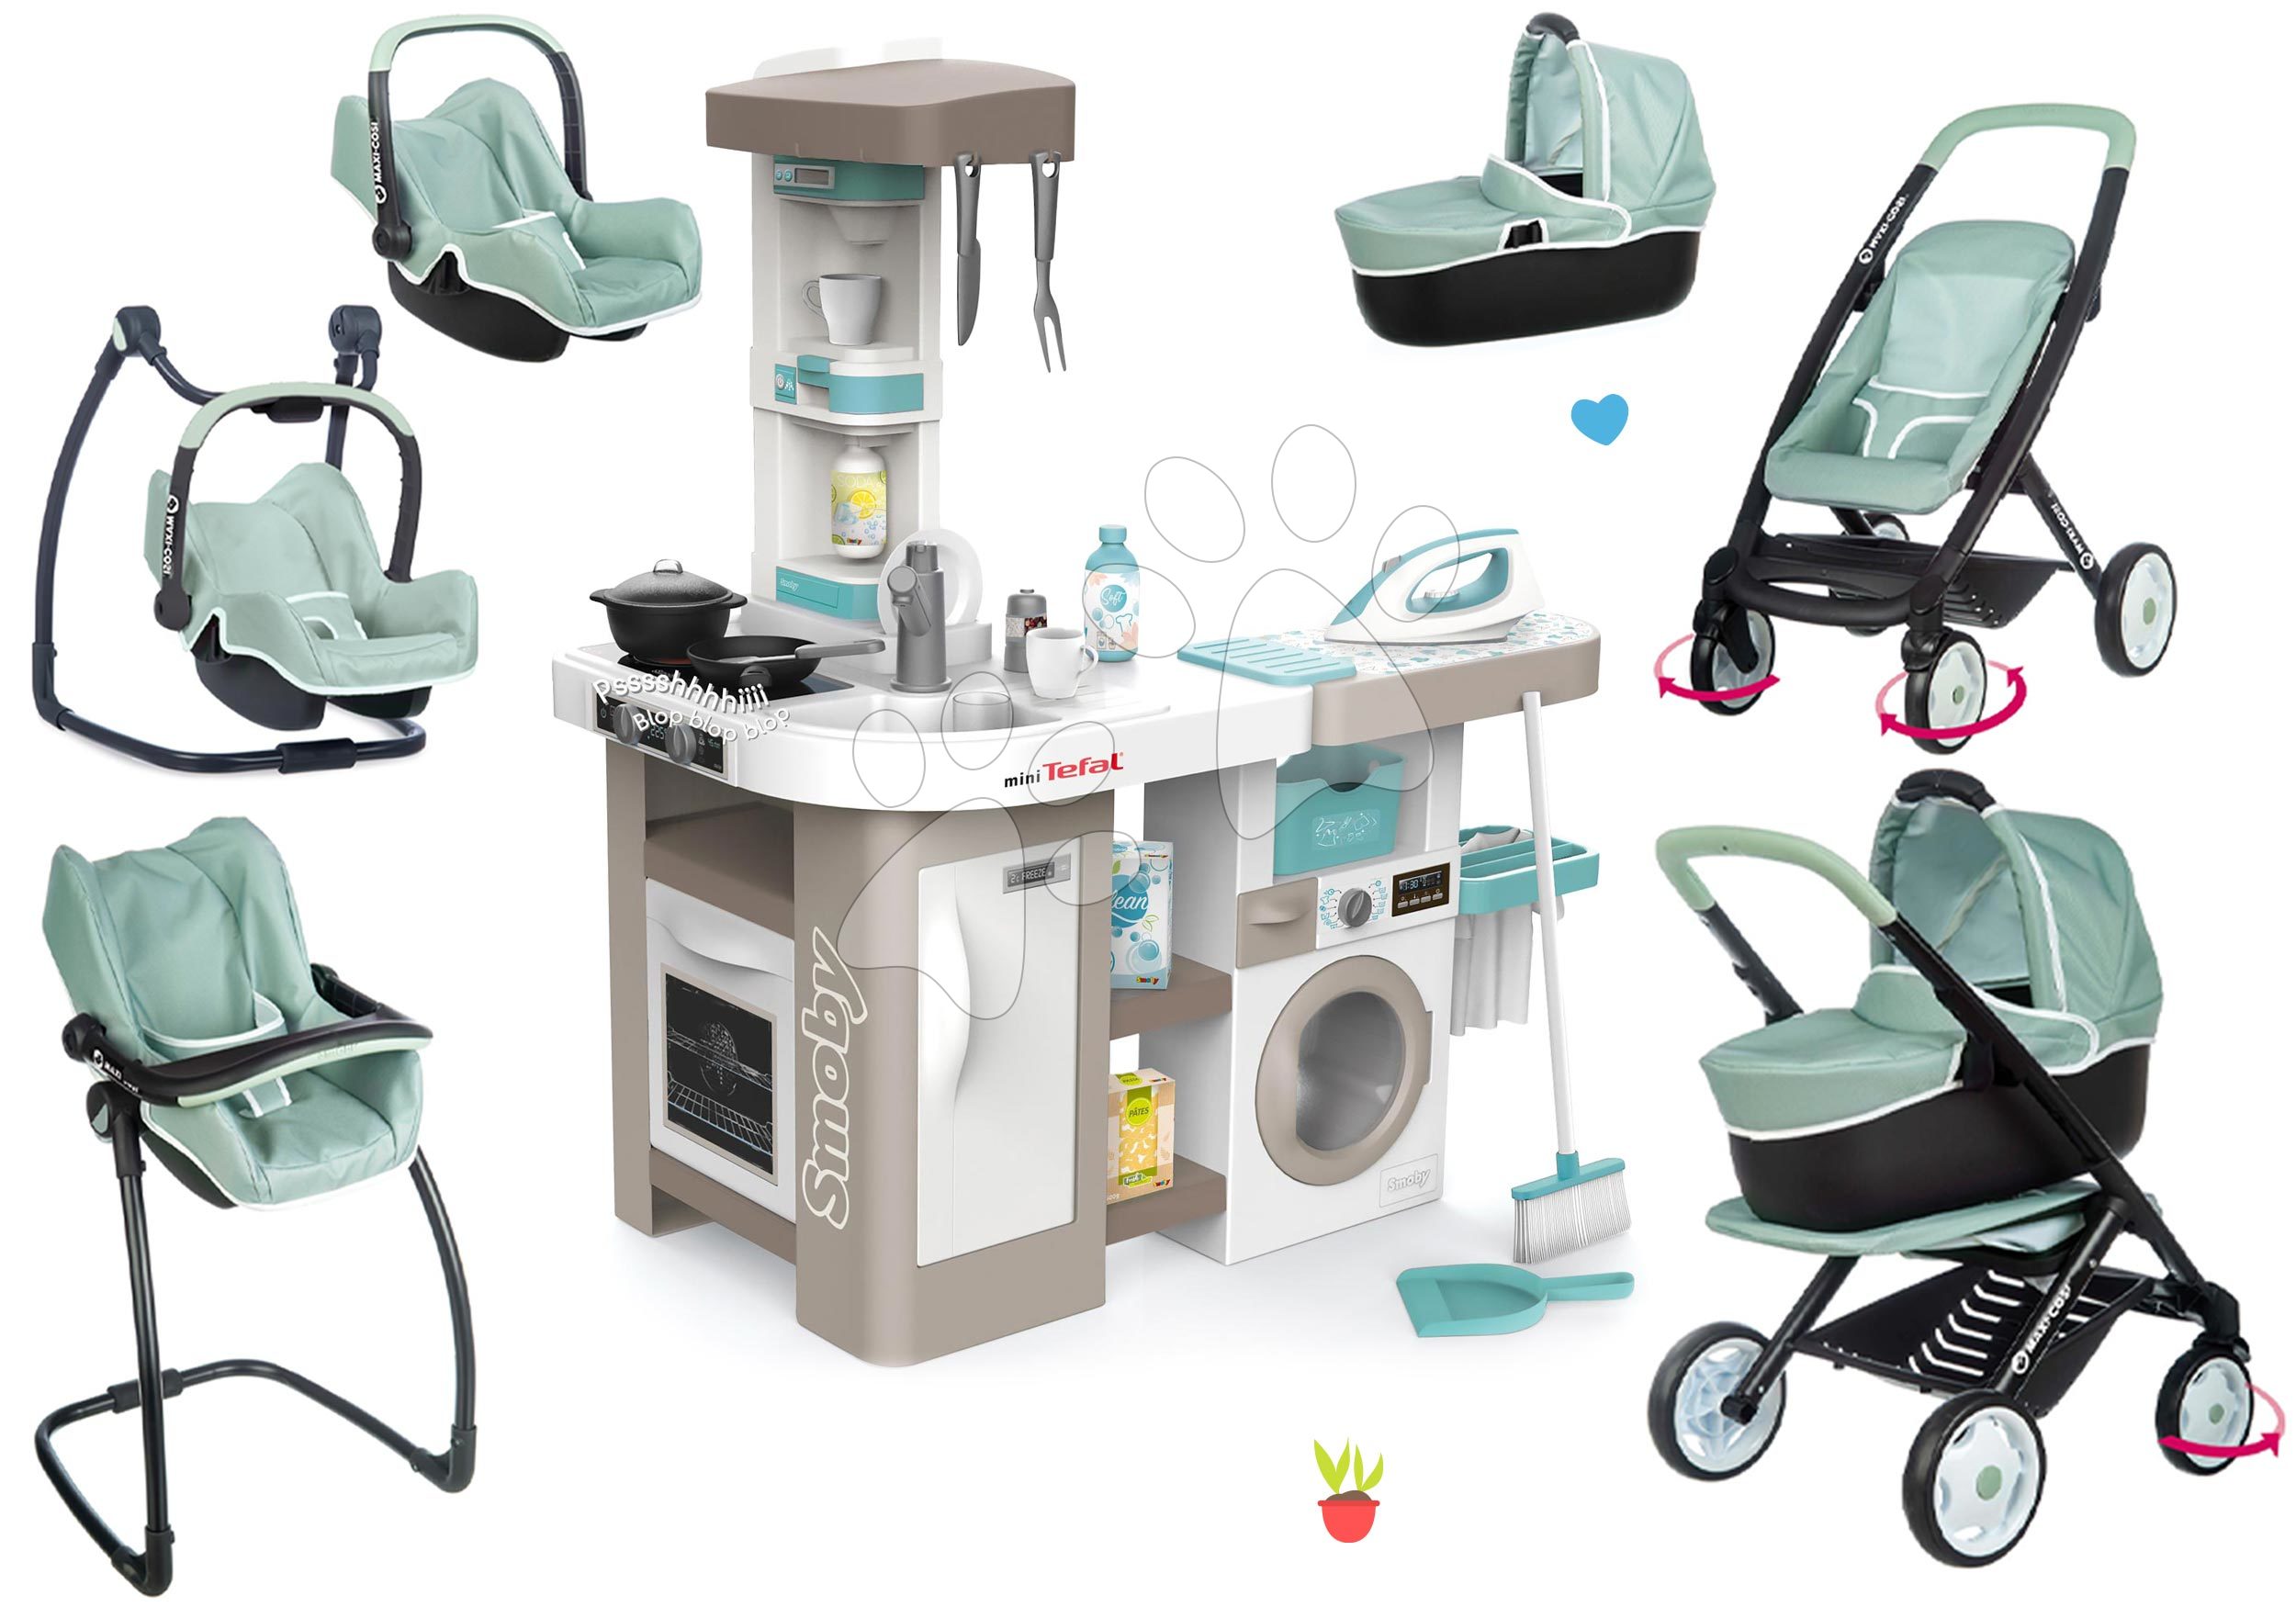 Kuhinje za otroke kompleti - Komplet elektronska kuhinja s pralnim strojem in likalno desko Tefal Cleaning Kitchen 360° Smoby in kombinirani voziček Maxi Cosi s stolčkom in avtosedežem ter počivalnikom